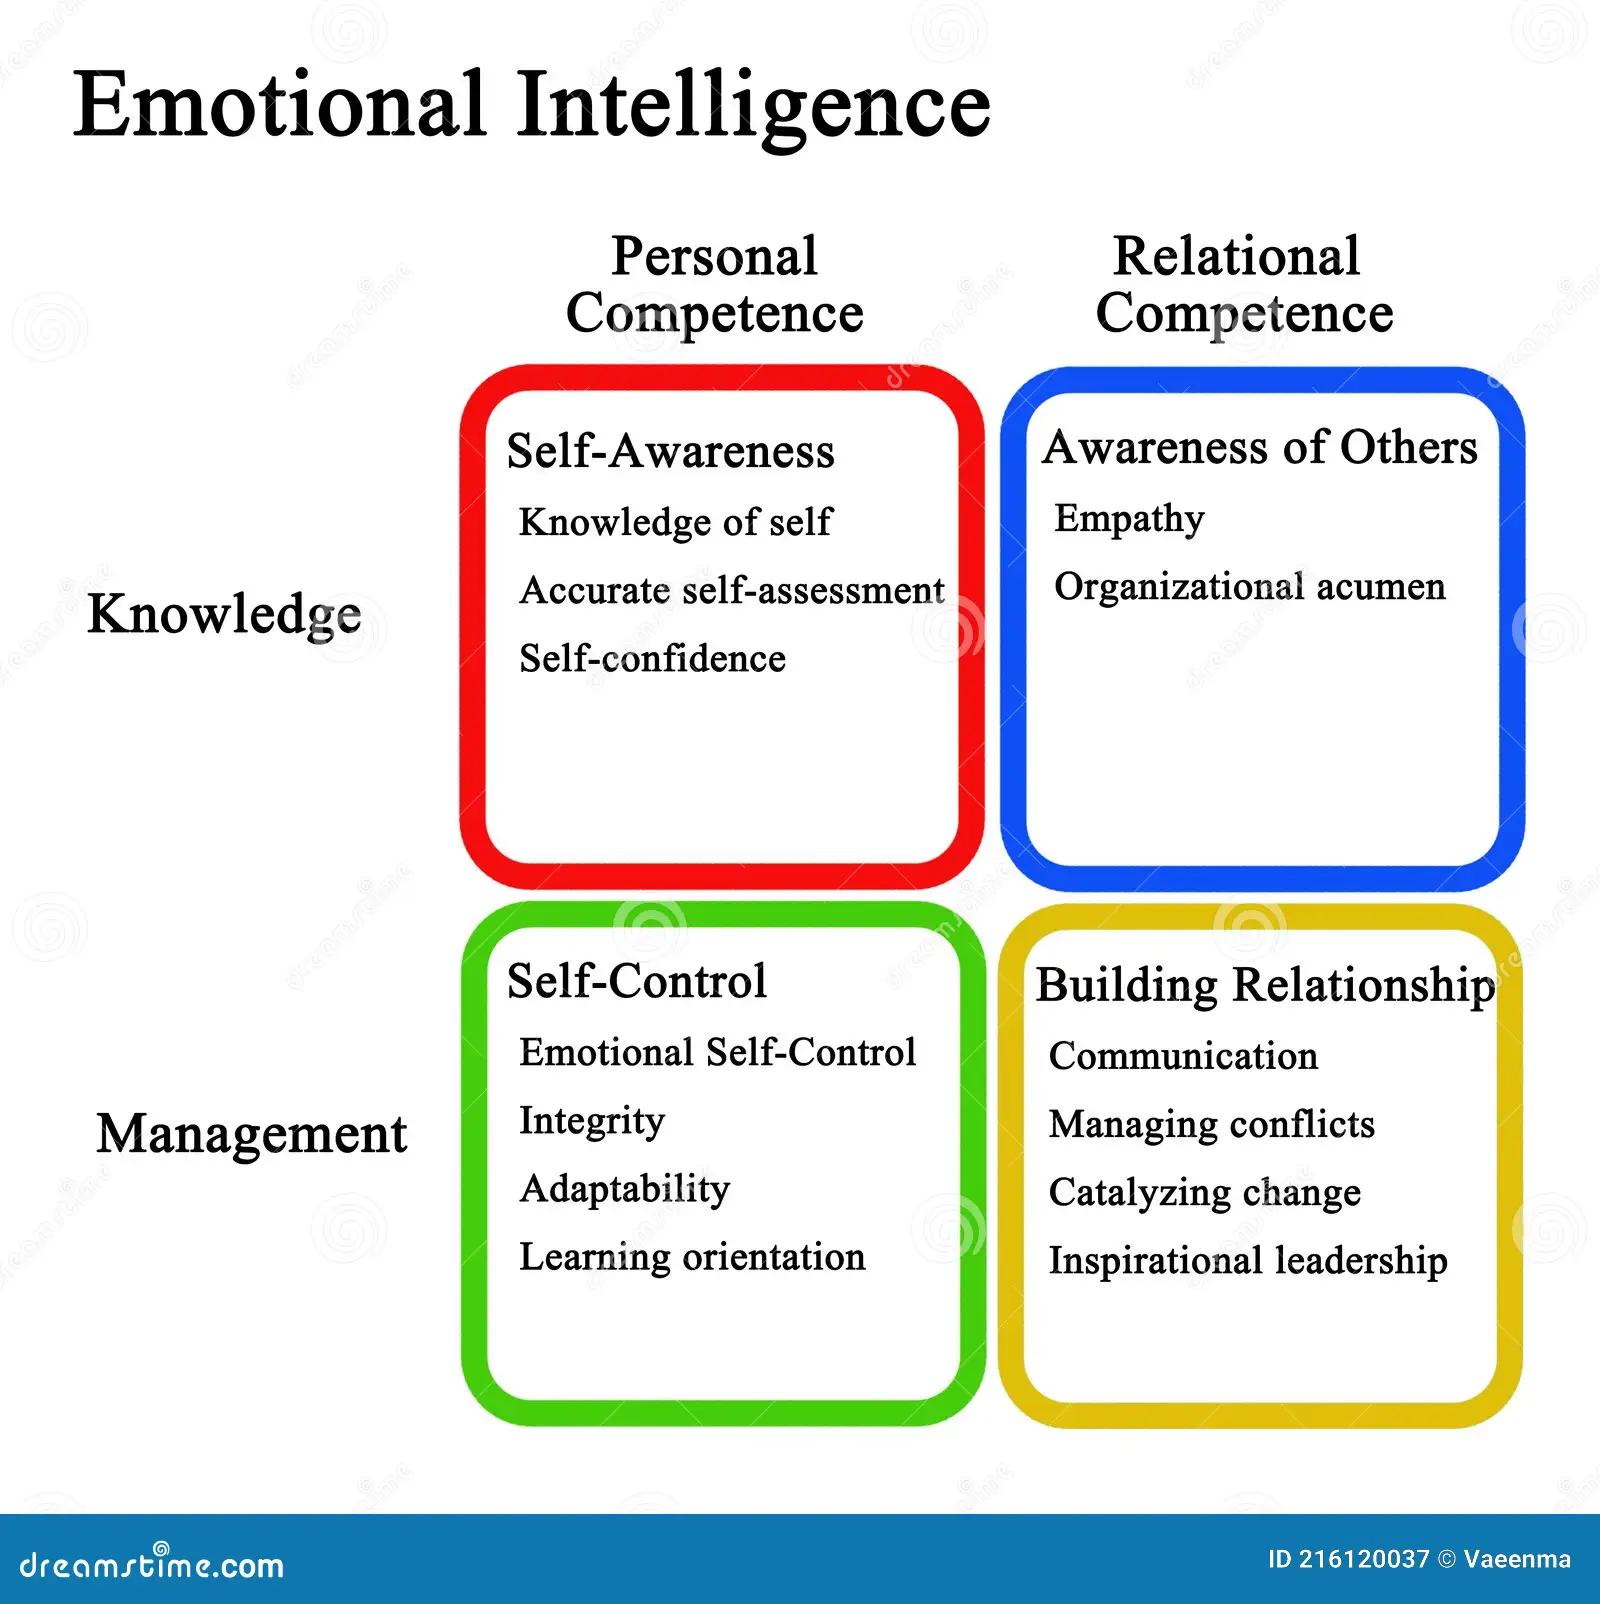 dominios de la inteligencia emocional - Cuántos dominios tiene la inteligencia emocional